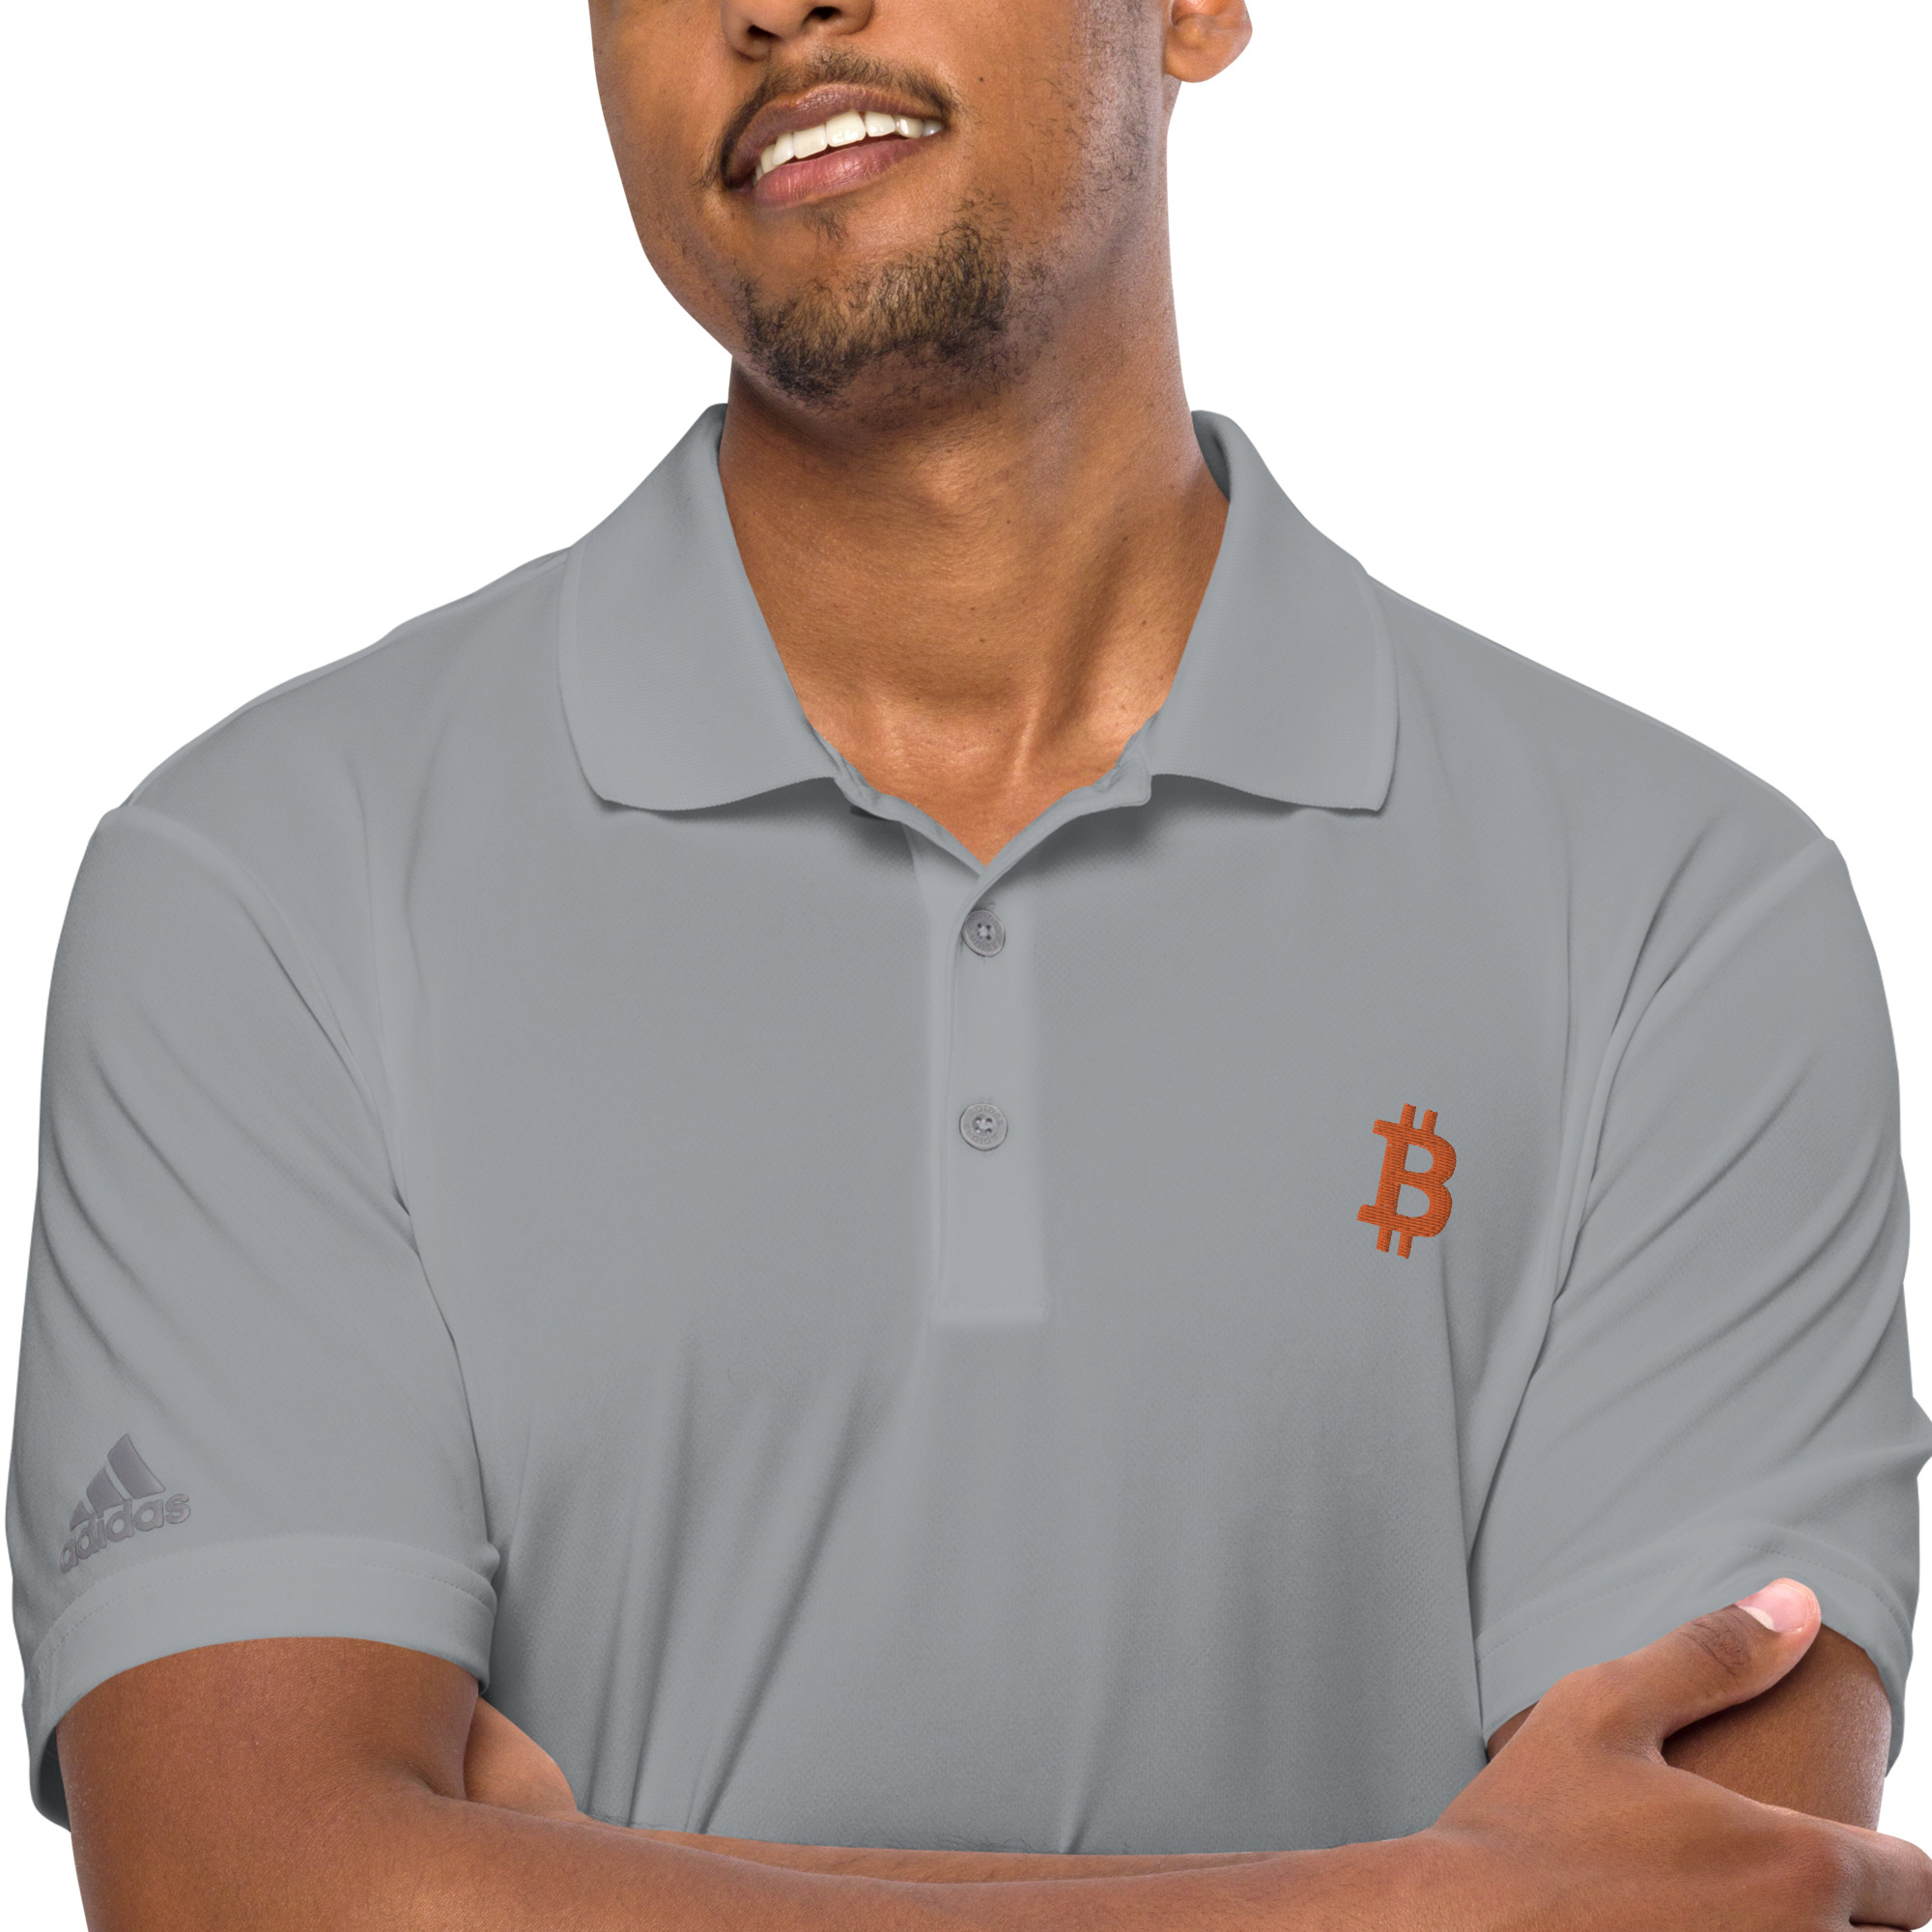 person wearing gray bitcoin adidas polo shirt close up